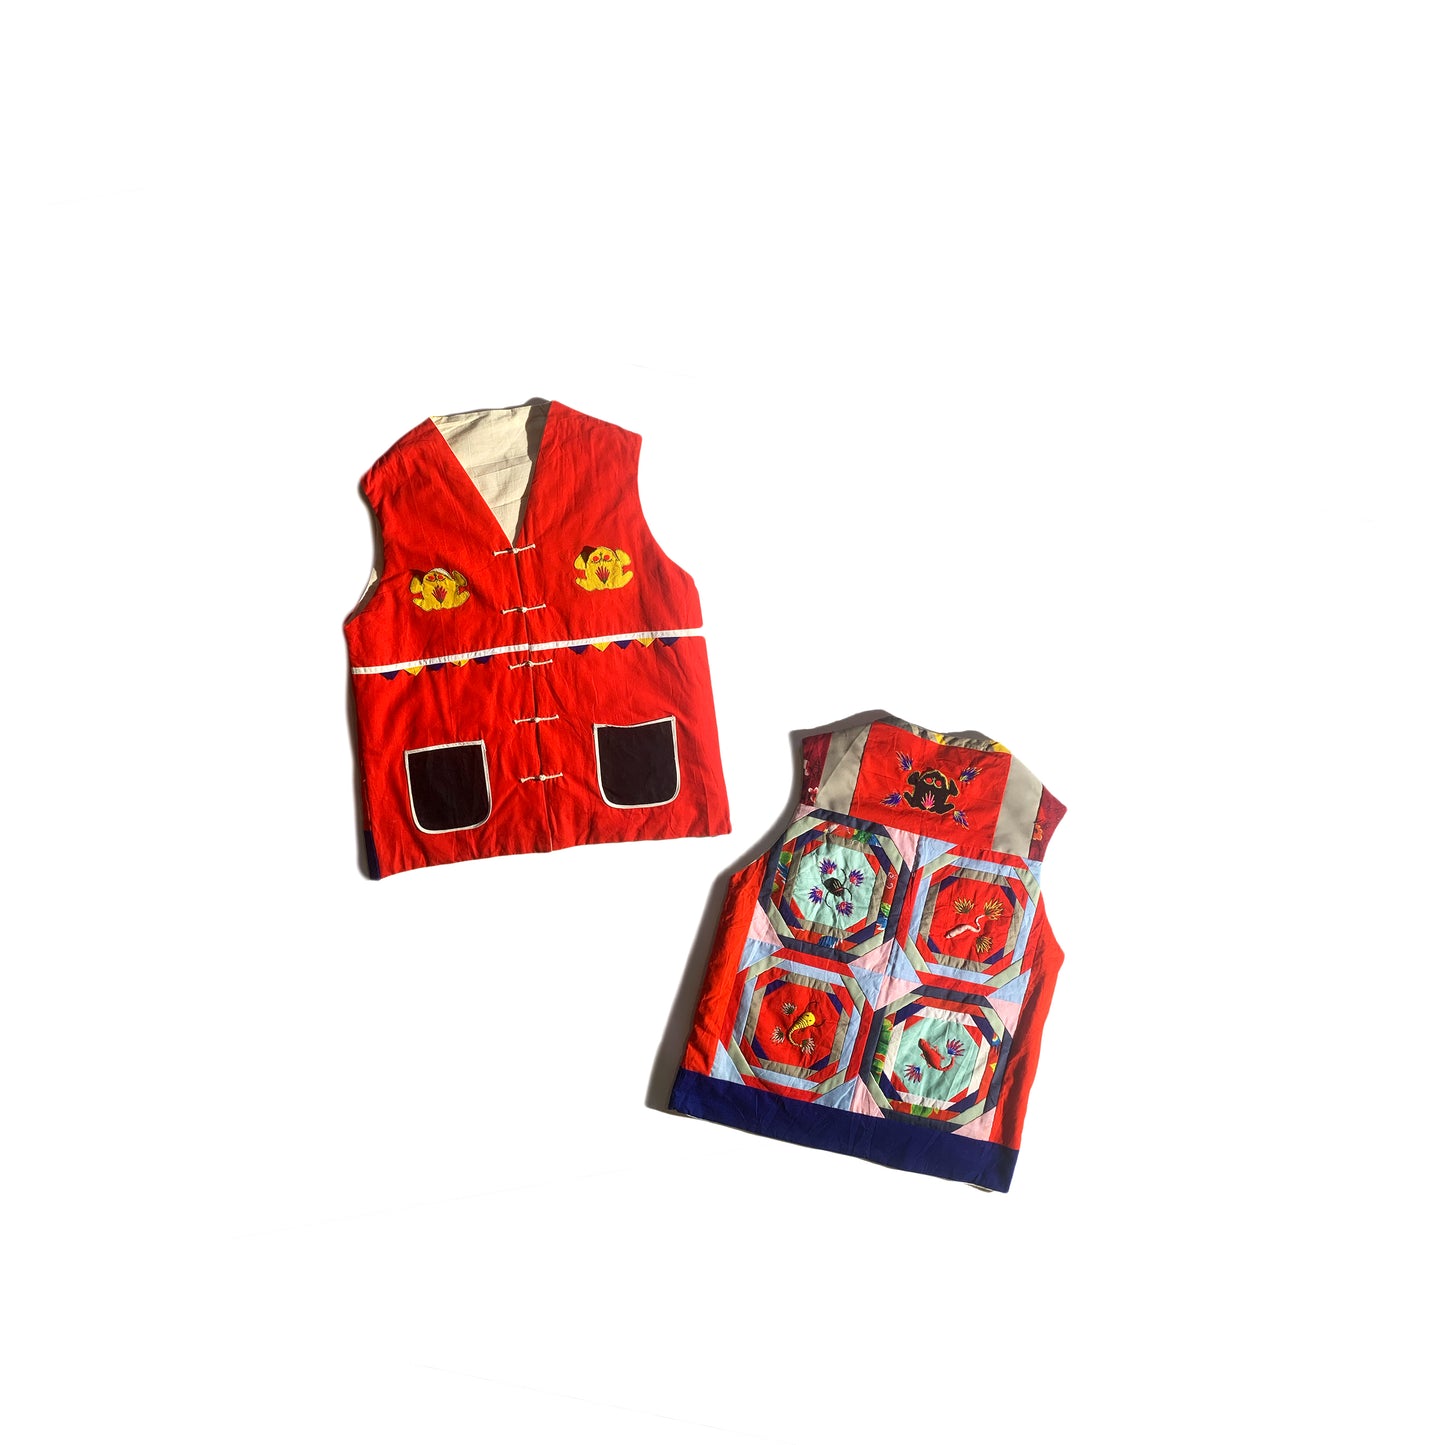 Vintage Embroidered Vest